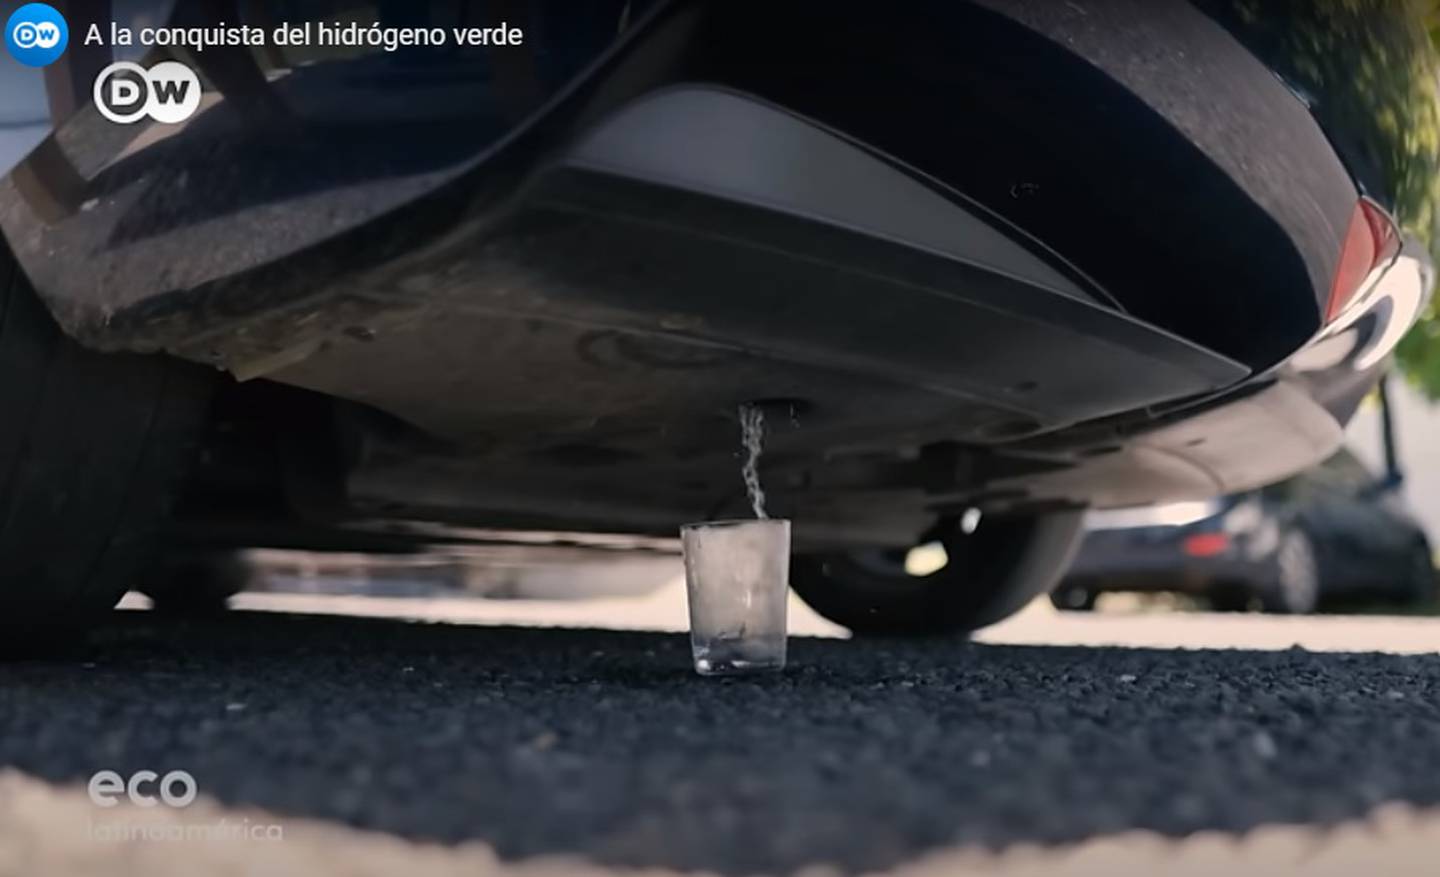 Exastronauta de la NASA, Franklin Chang, se toma un vaso de agua salido de un carro que recién venía usando